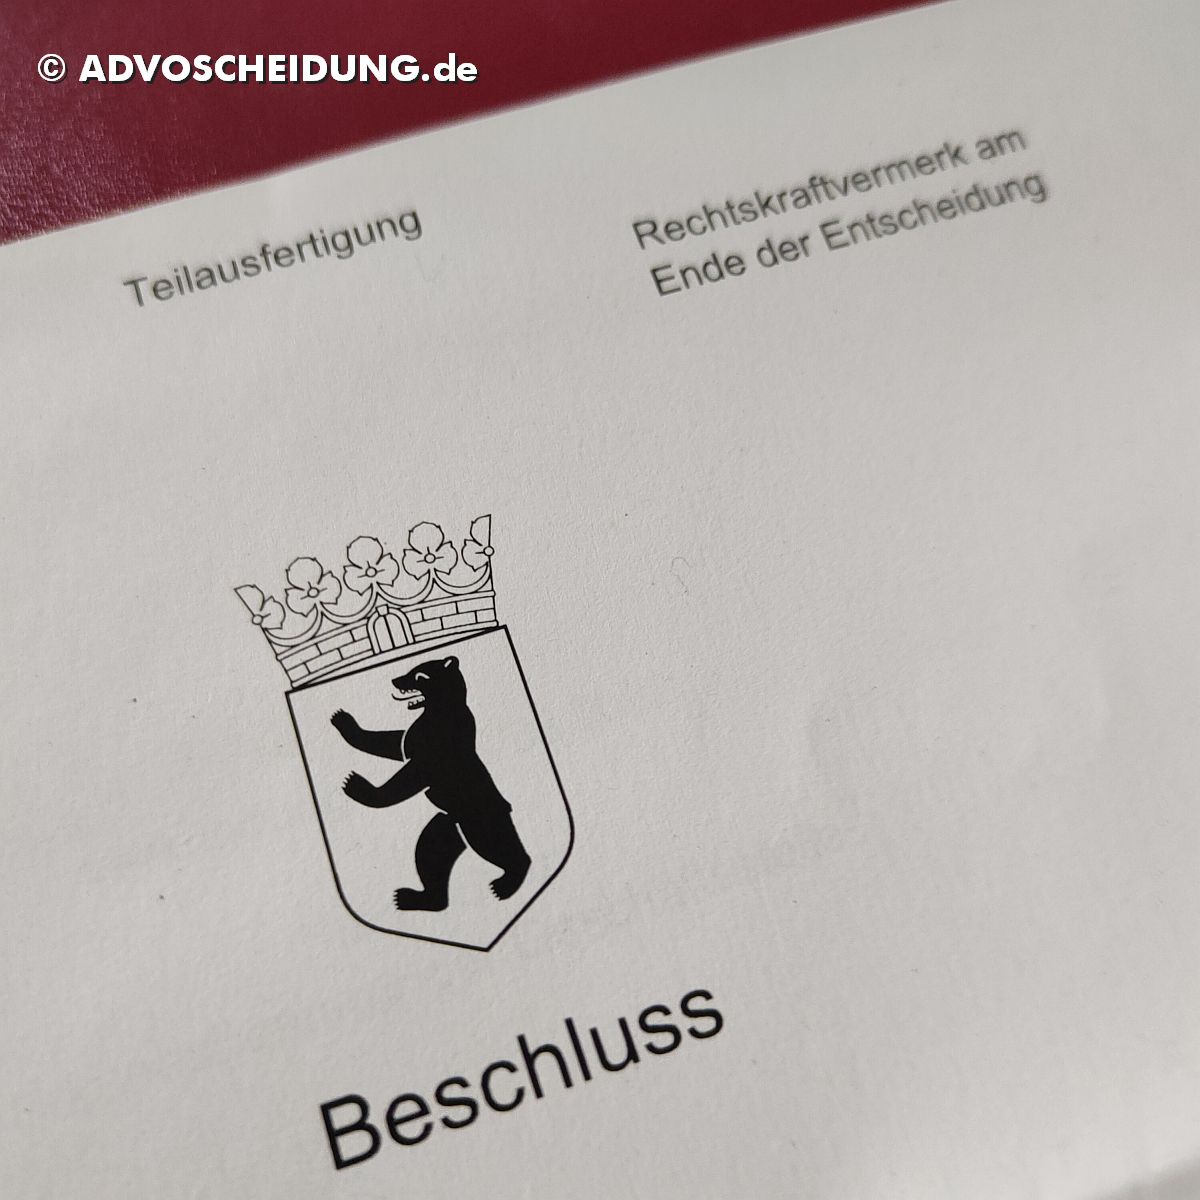 Scheidung online einreichen über beA in Berlin